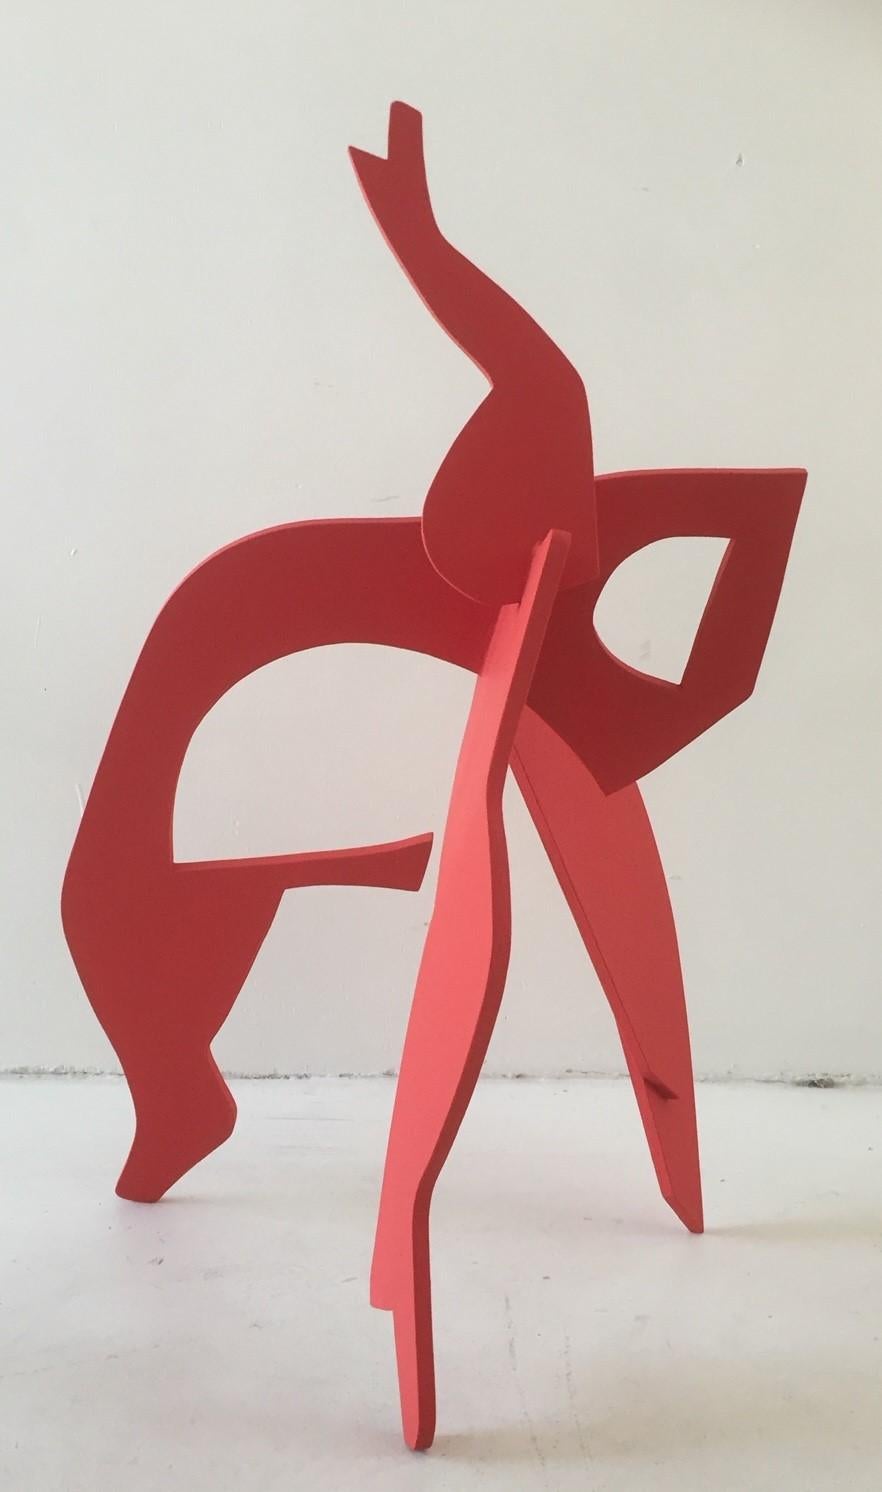 Cette sculpture est faite d'aluminium, peint dans une épaisse couche rugueuse de laque rouge. 

Jan Wils est un artiste né dans la ville d'Eindhoven, aux Pays-Bas. 
Jan Wils à propos de ses sculptures :

"Les objets que je fabrique sont interactifs